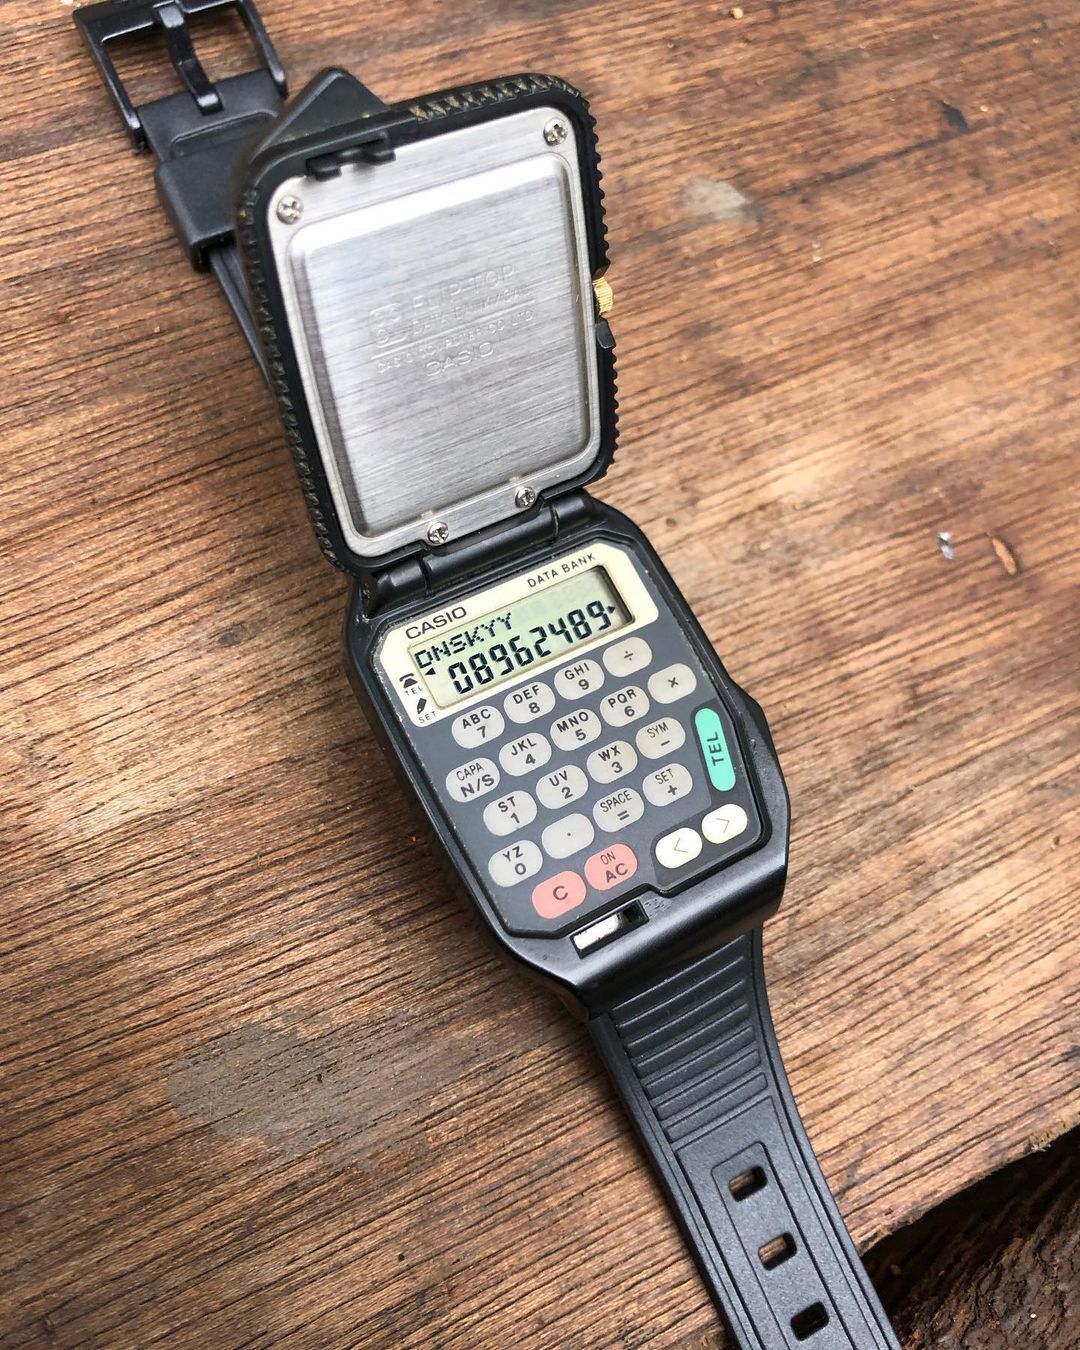 اوج فناوری ساعت ژاپنی سال 1992 (عکس)